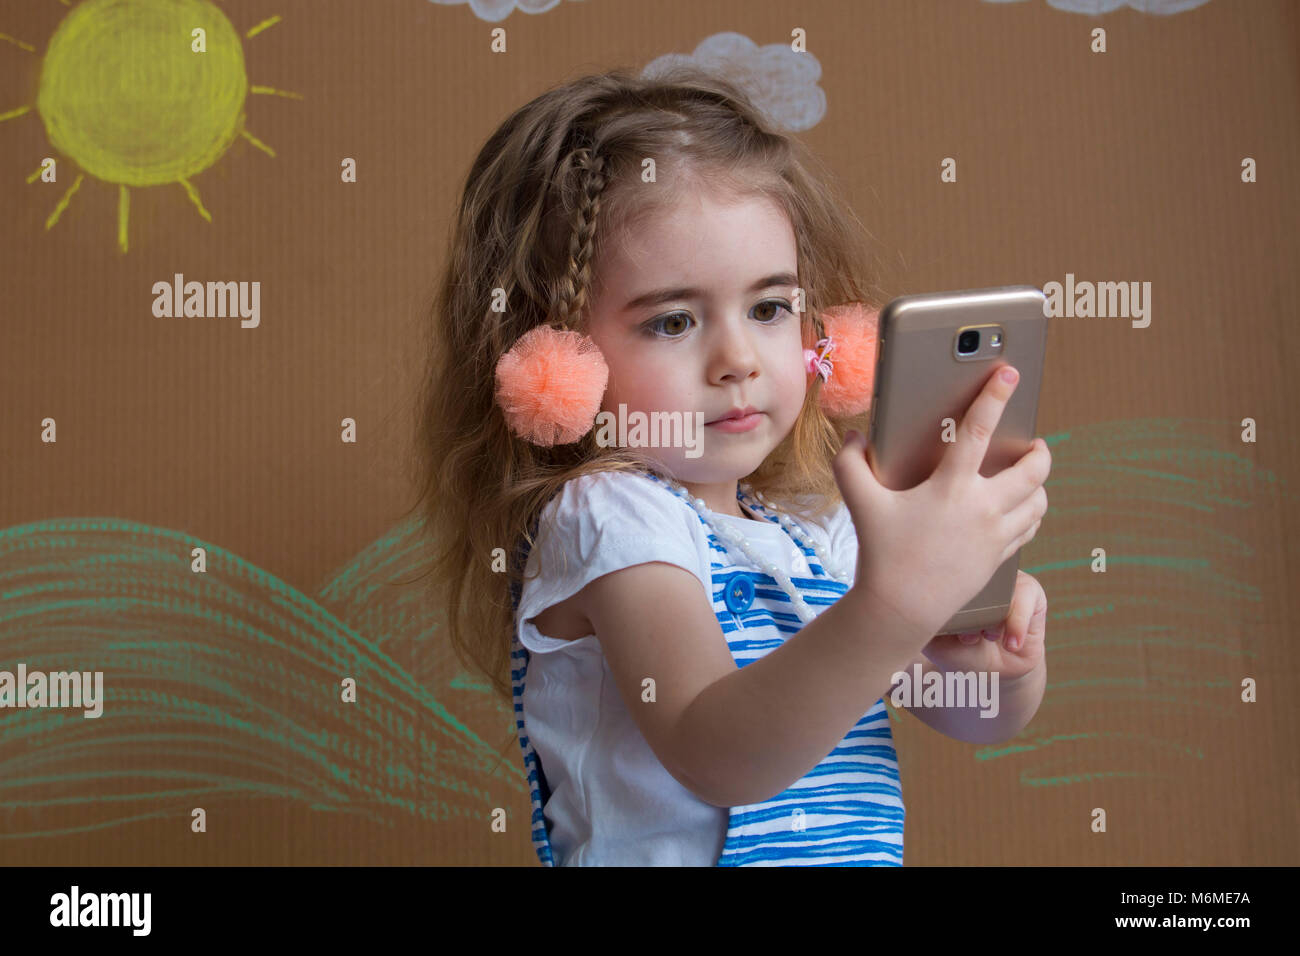 Adorabili poco moderno kid, bionda ragazza toddler giocando con il telefono cellulare. nuove tecnologie digitali nelle mani di un bambino Foto Stock